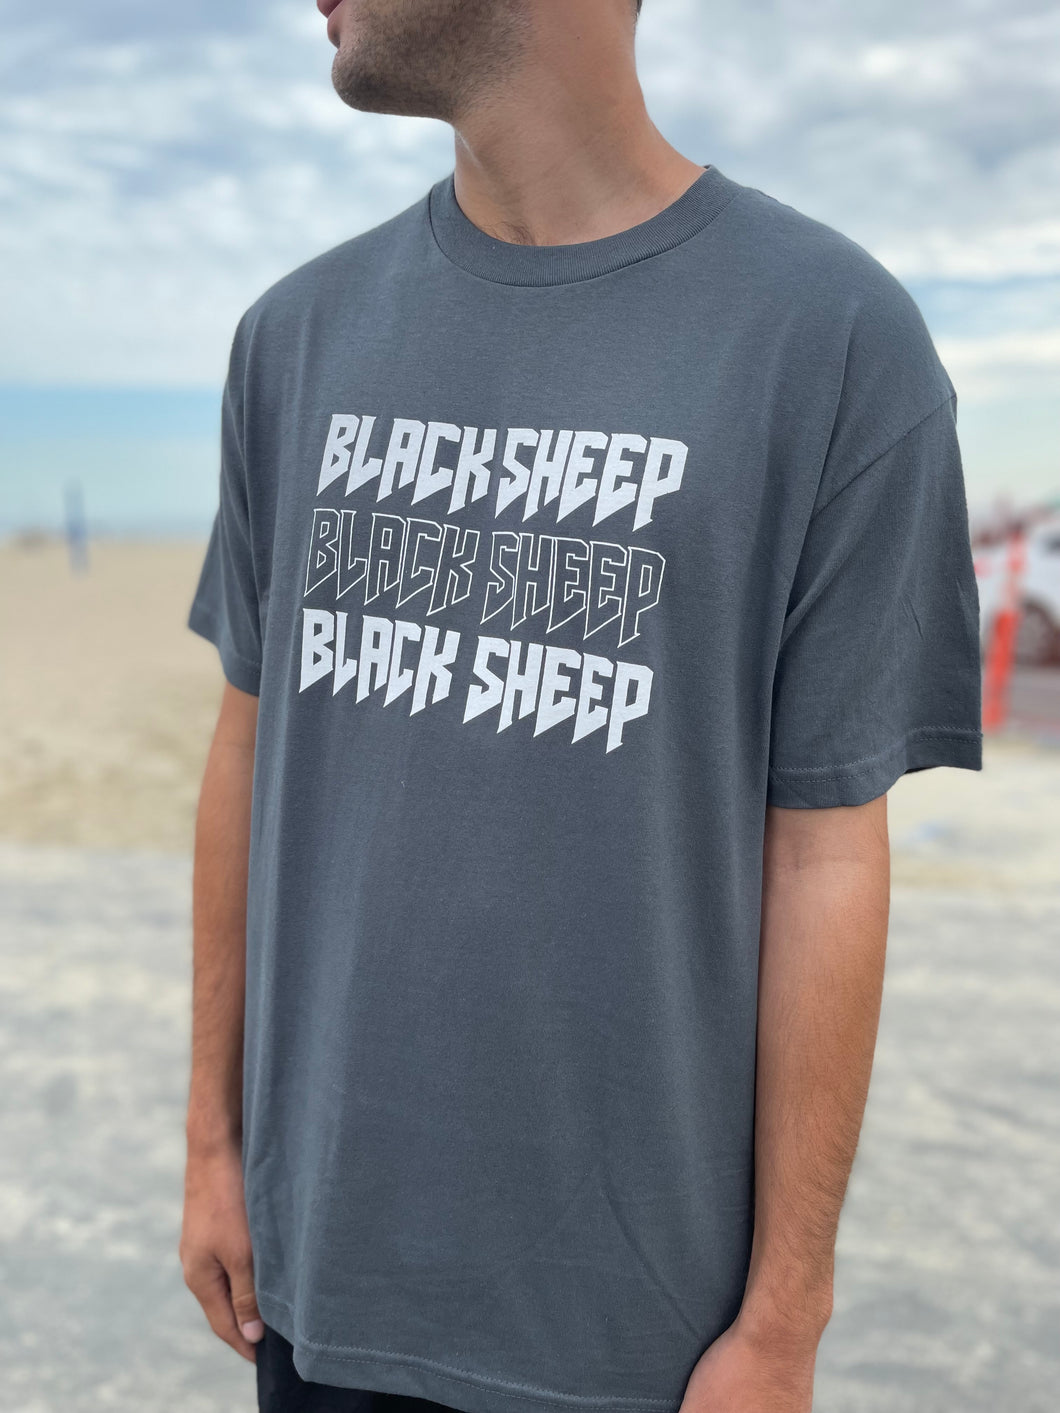 Grey “Blacksheep” T-Shirt